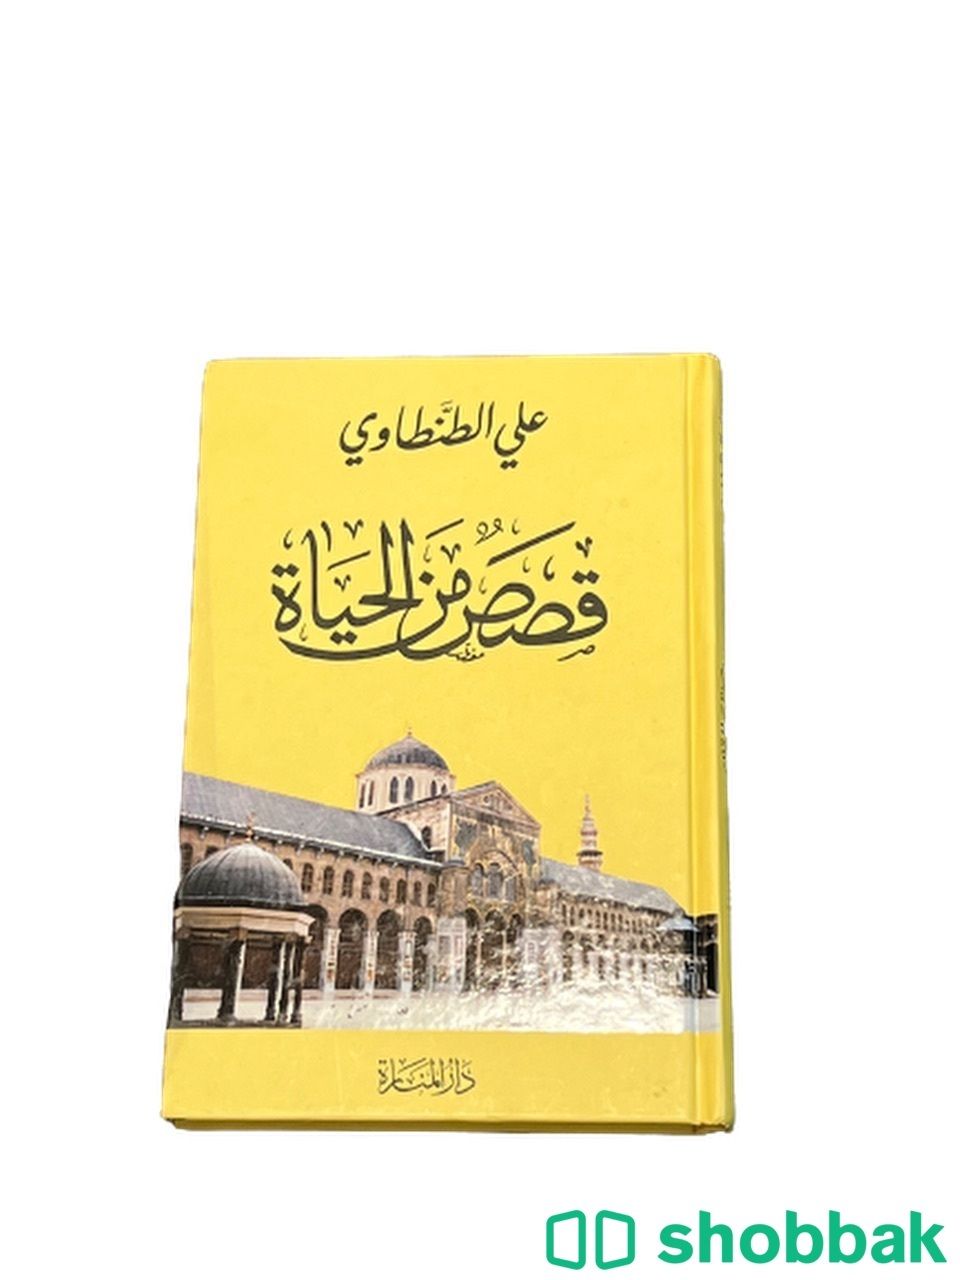 كتاب قصص من الحياة Shobbak Saudi Arabia